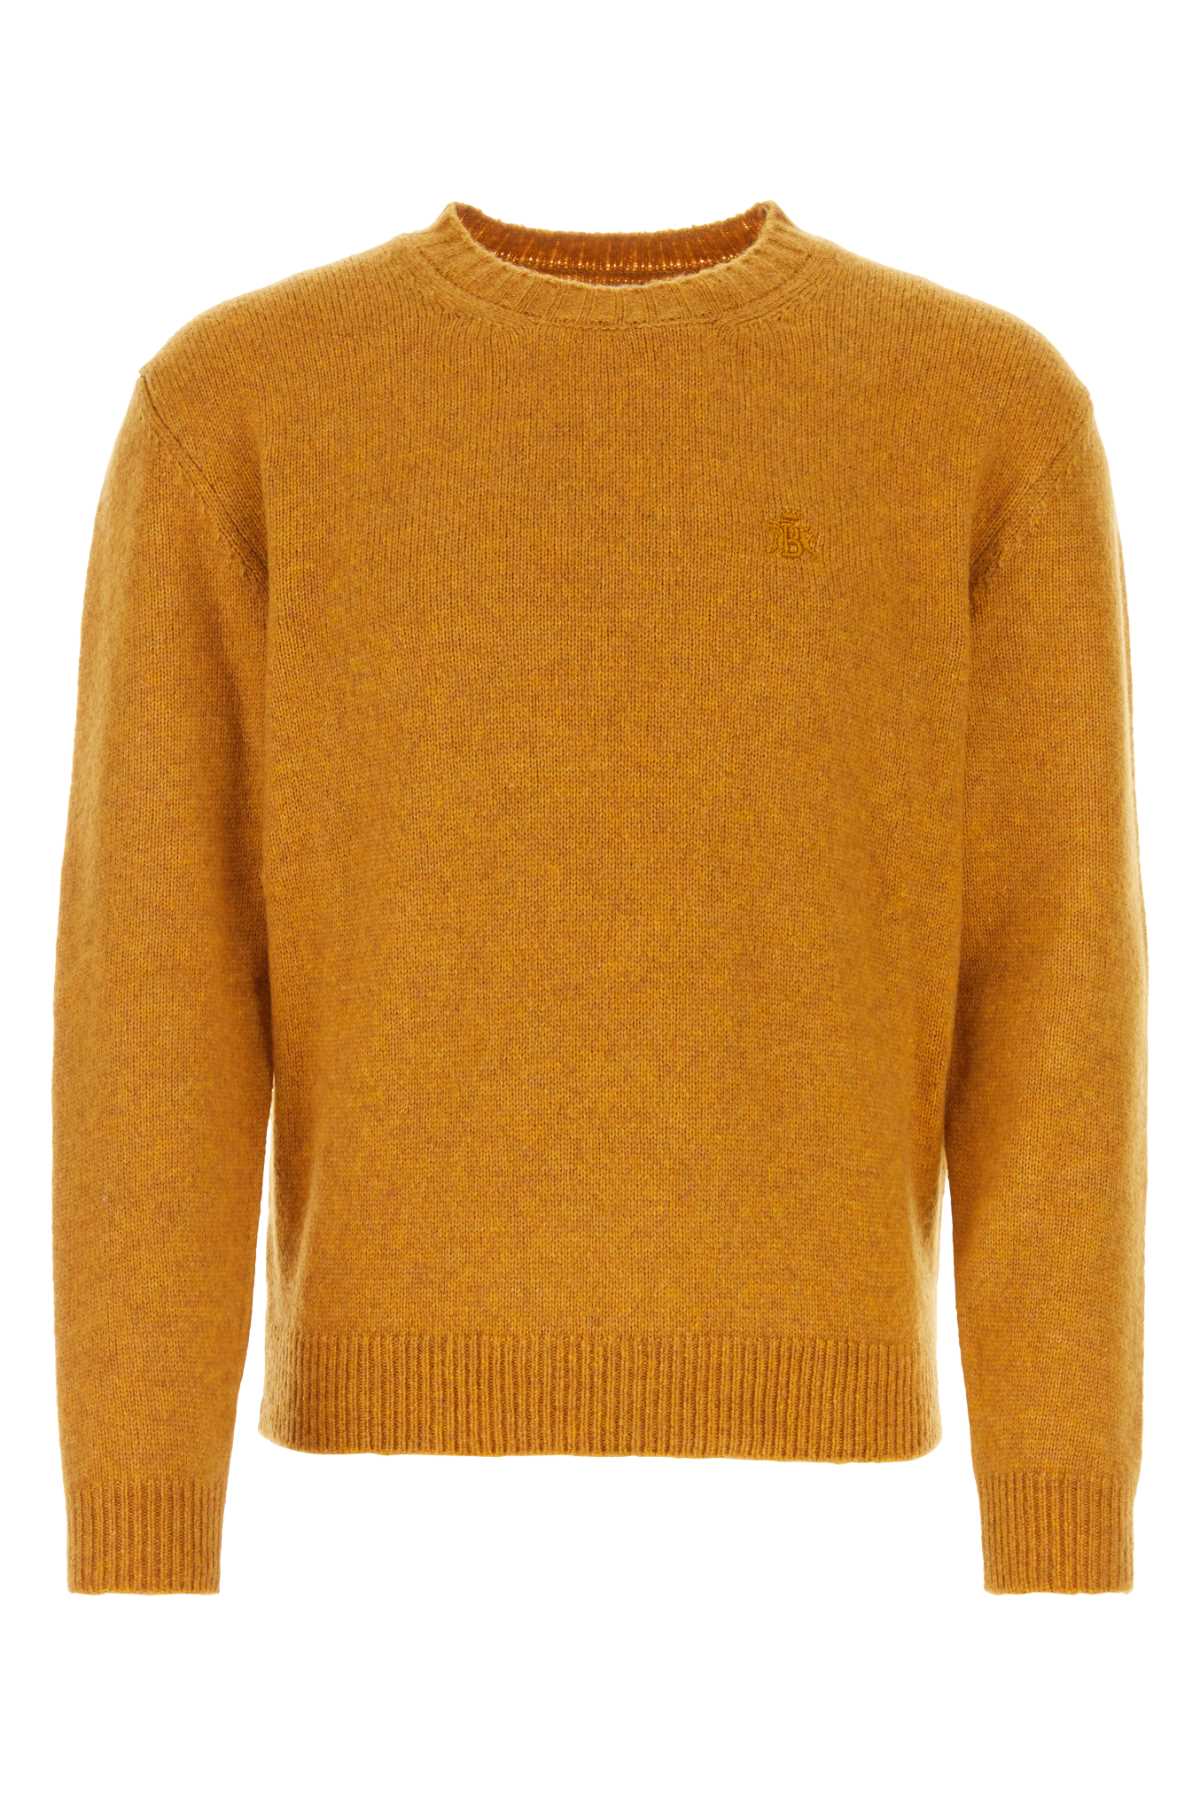 Ochre Virgin Wool Blend Sweater